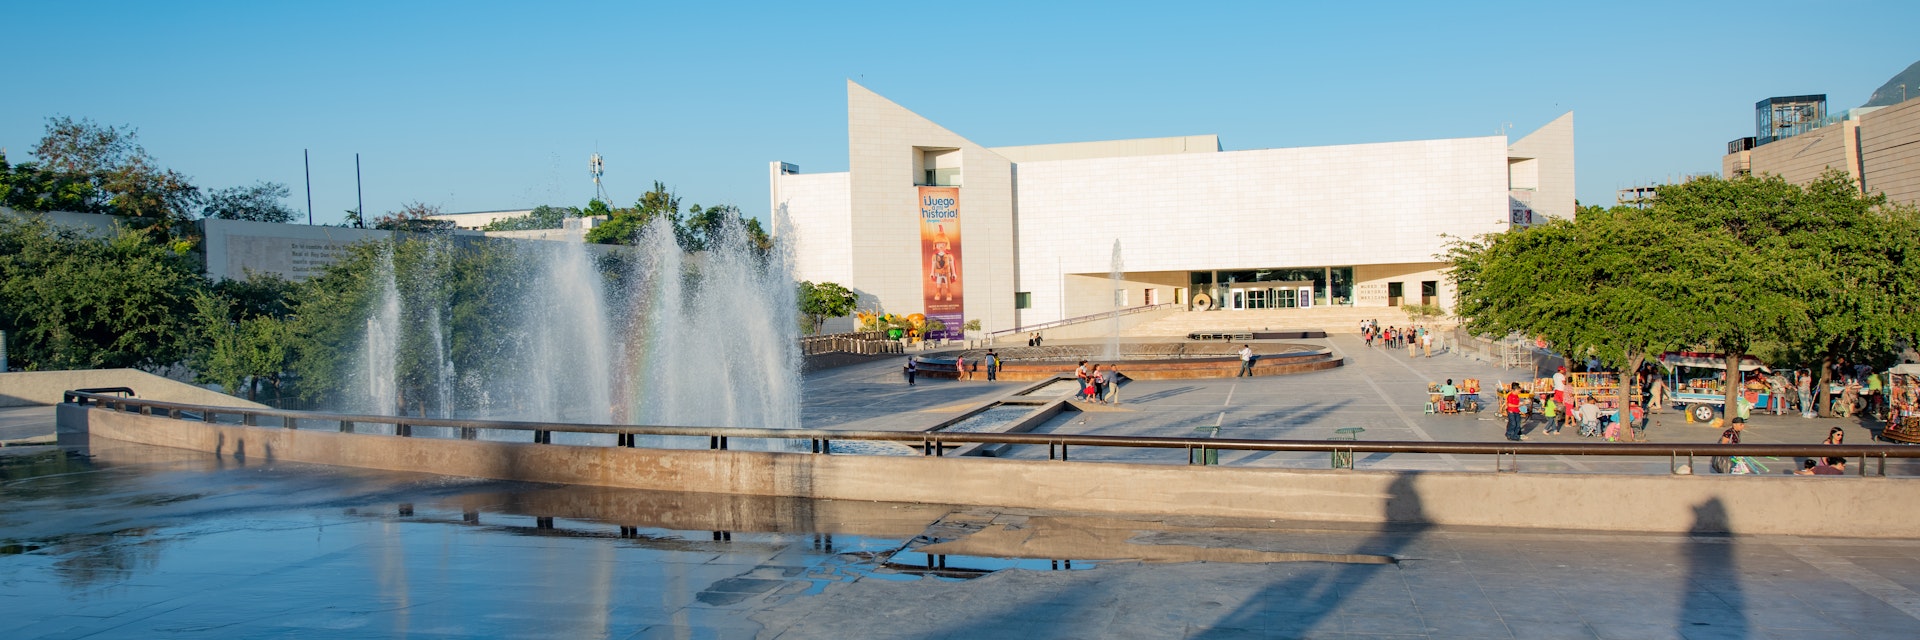 Museo de Historia Mexicana in Monterrey.